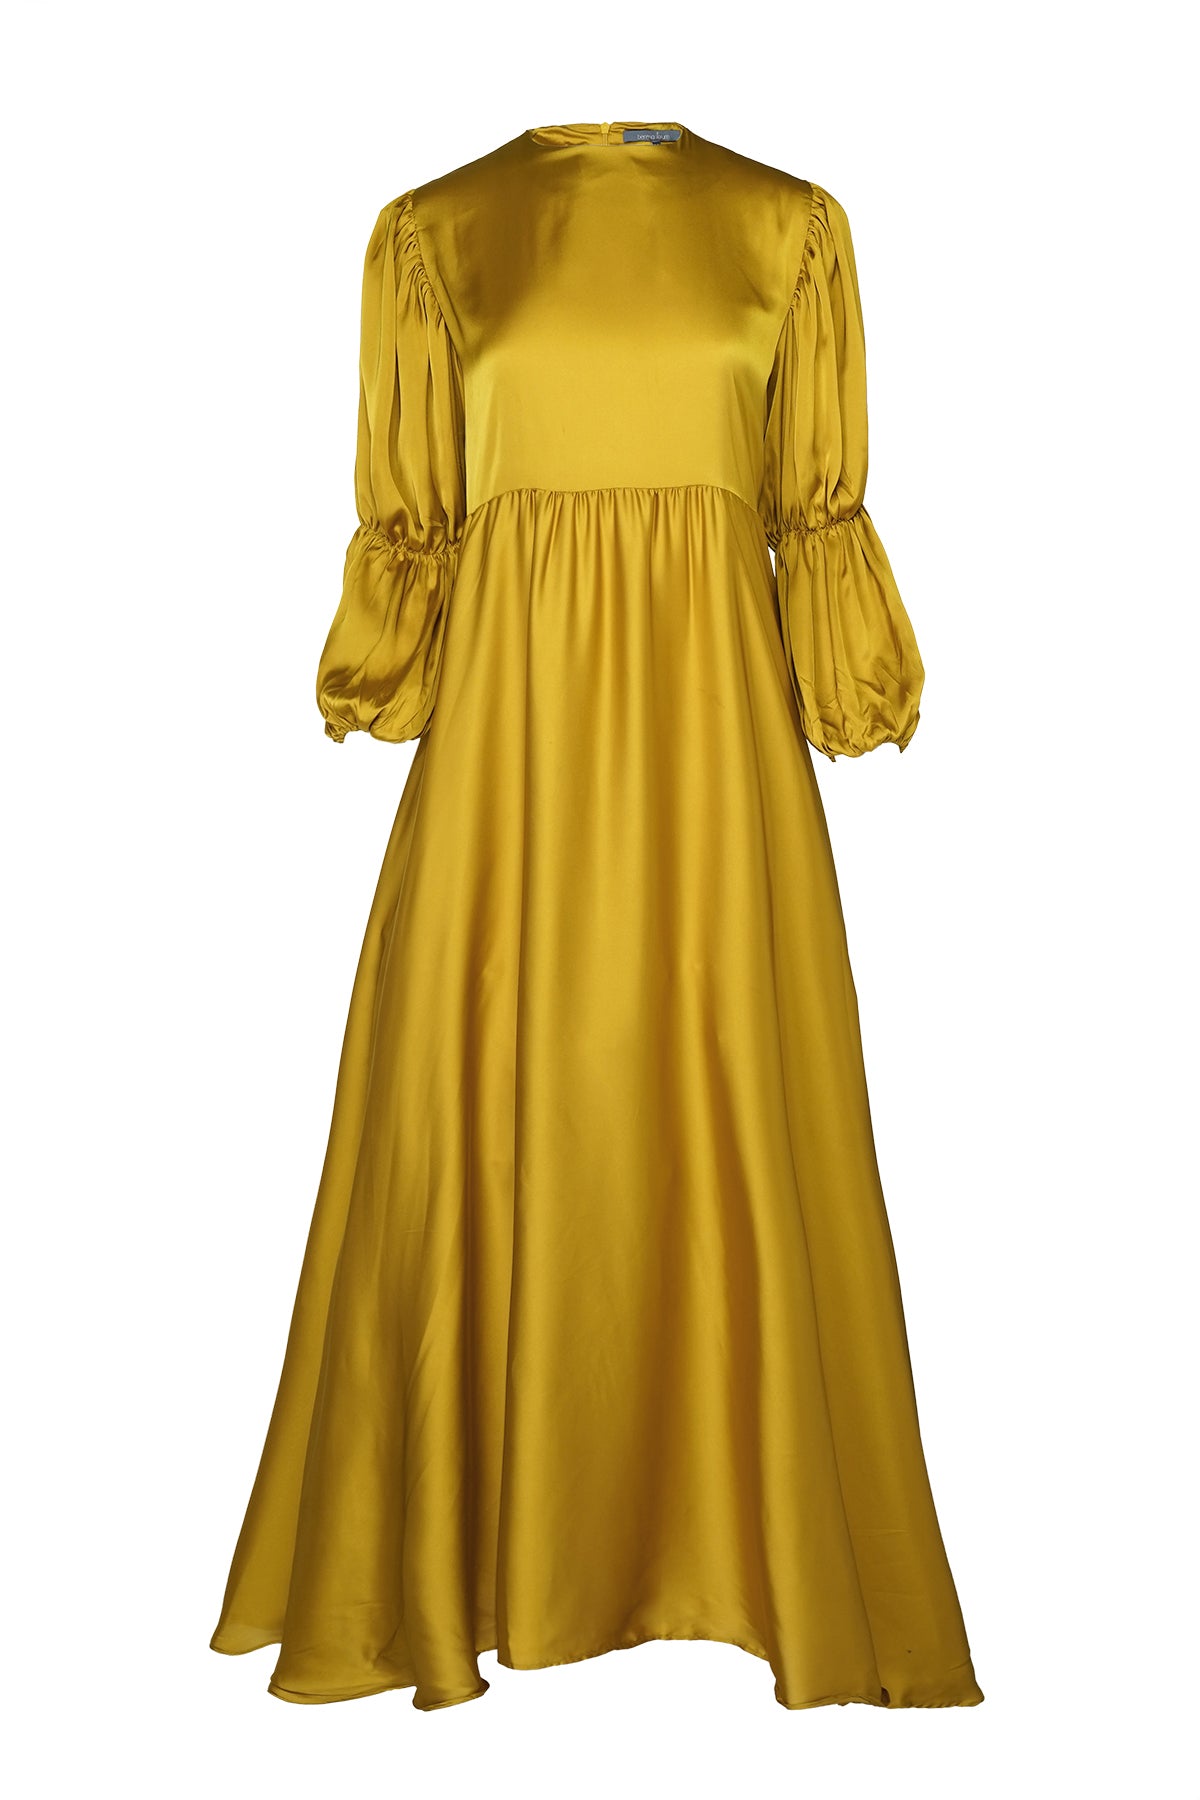 Syena Maxi Dress - Mustard